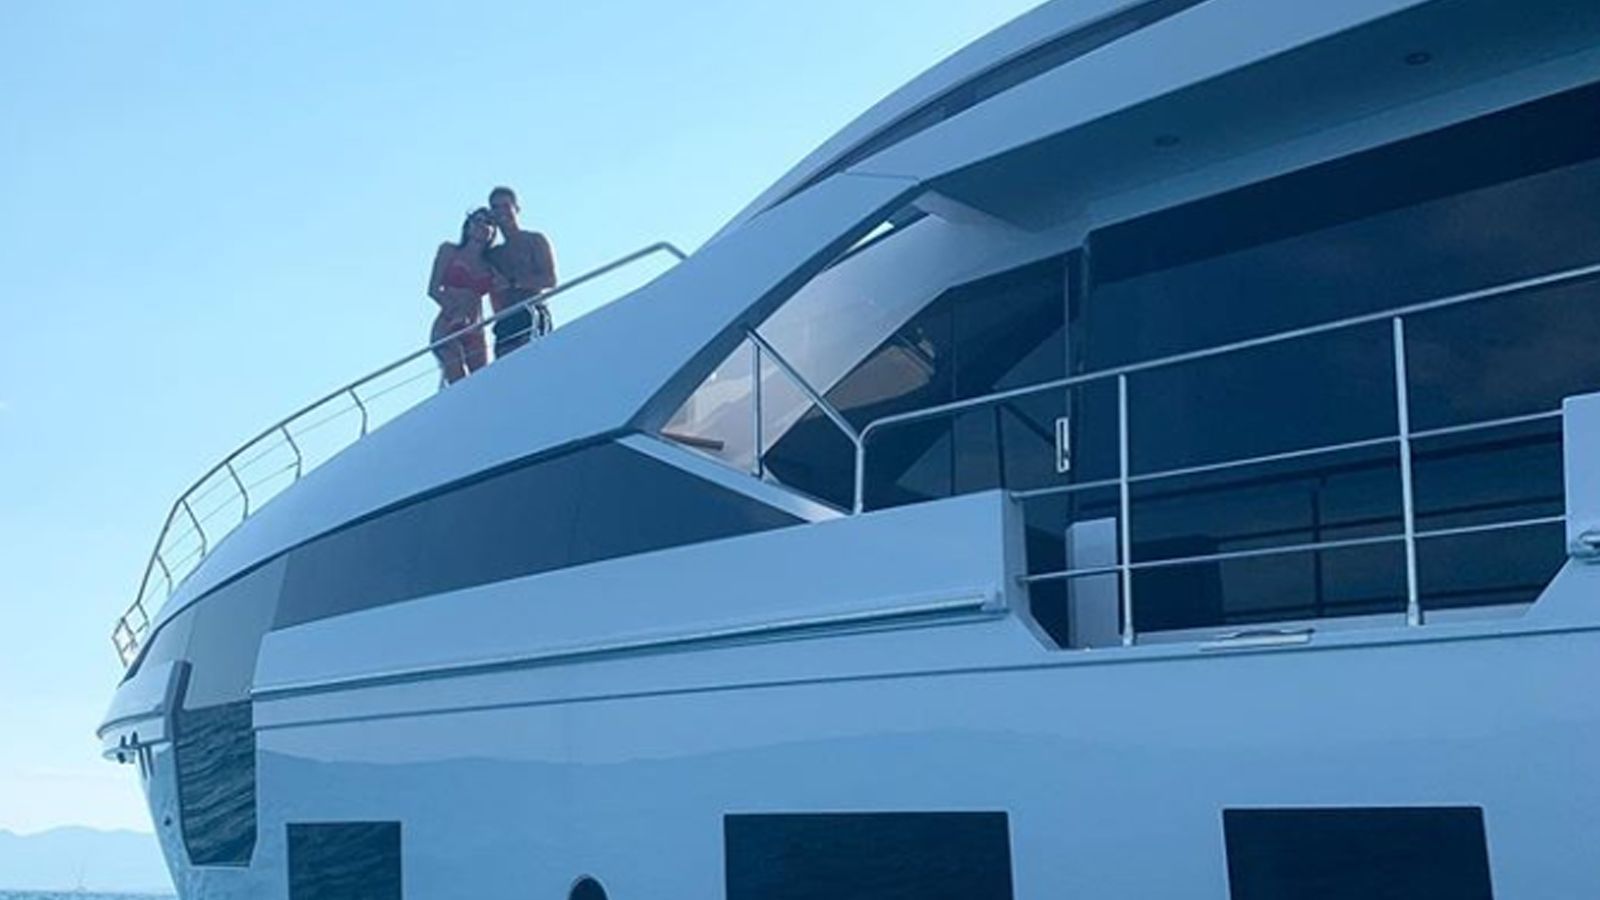 
                <strong>Pompös auf einer Mega-Yacht! So verbringt CR7 seine Freizeit</strong><br>
                Gemeinsam mit seiner aktuellen Lebensgefährtin Georgina Rodriguez schippert Cristiano Ronaldo auf einer Mega-Yacht übers Meer und lässt es sich sichtlich gut gehen.
              